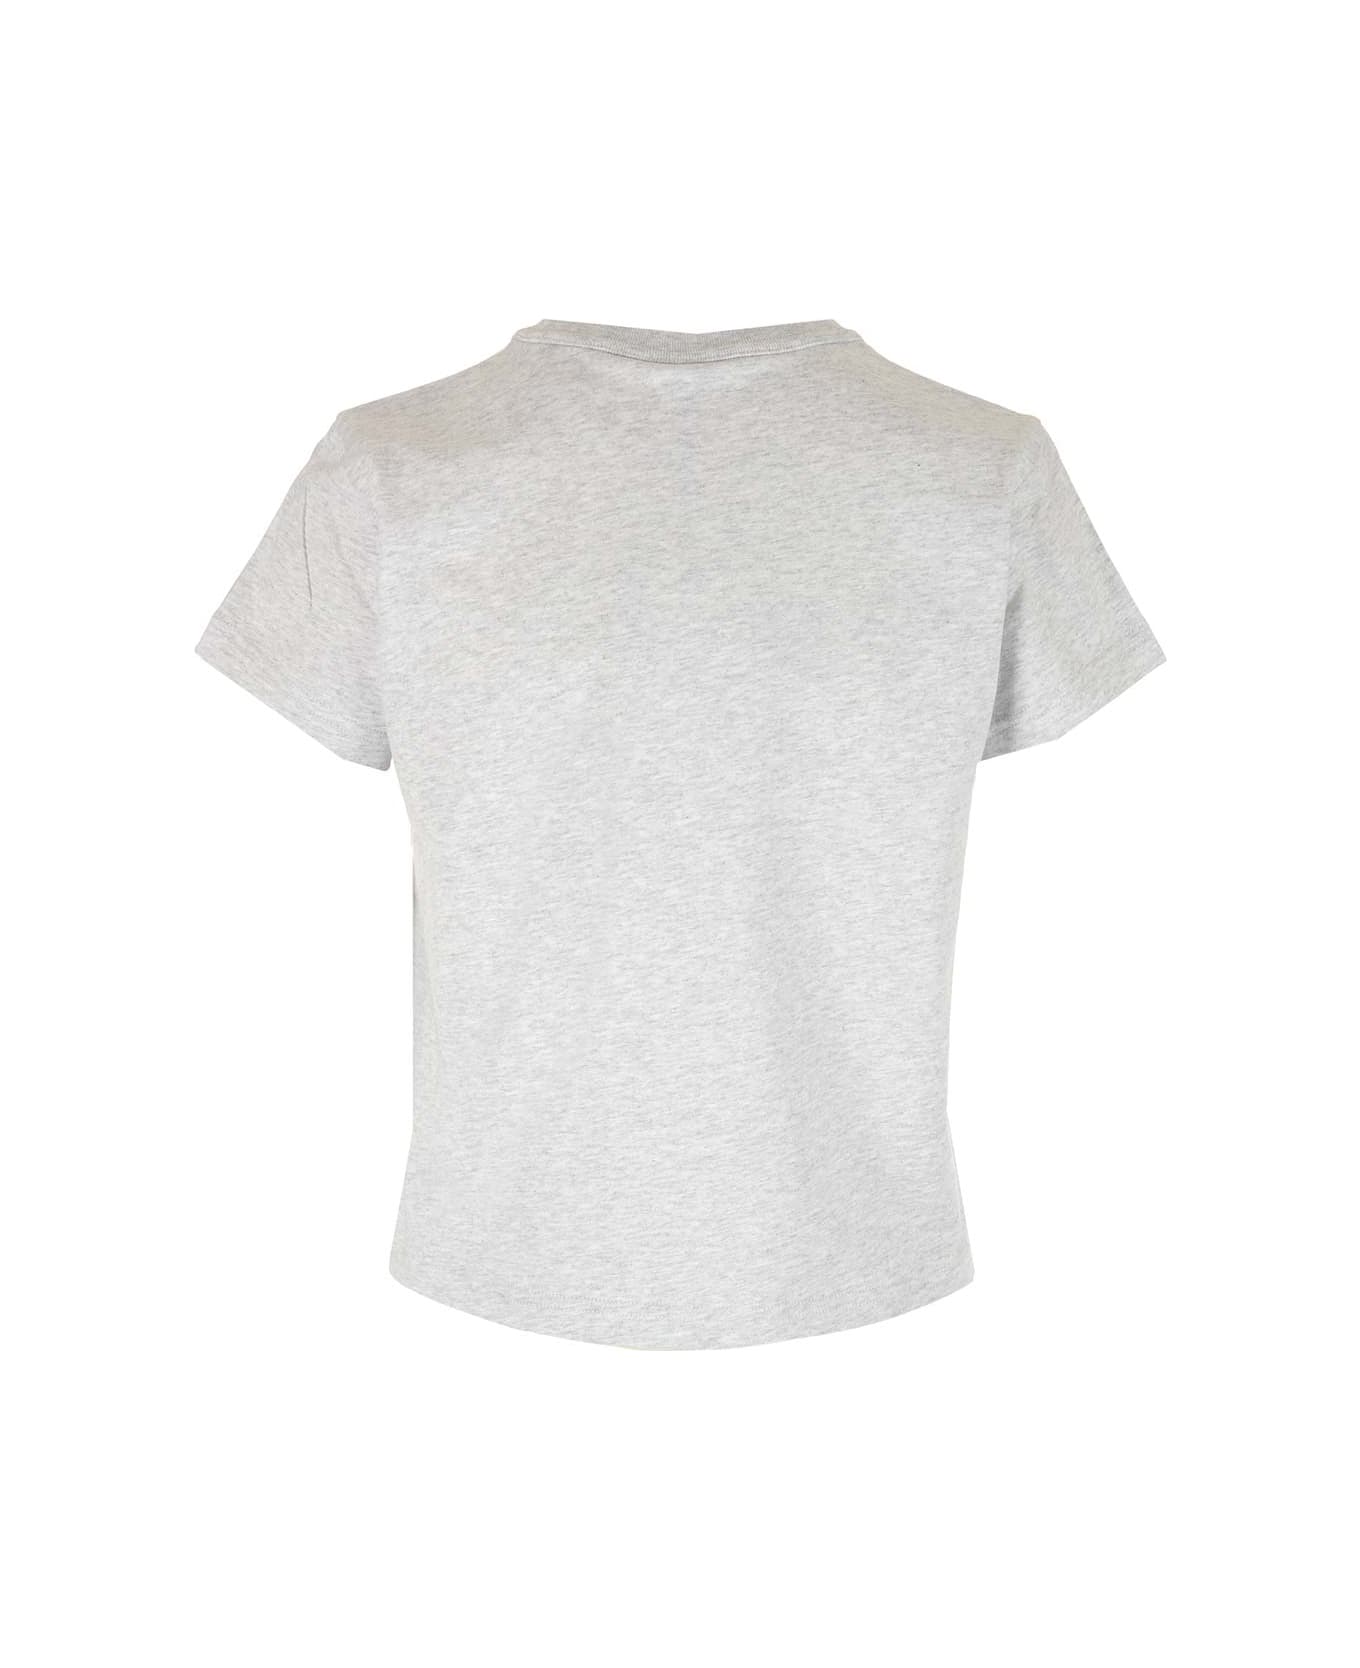 Alexander Wang 'essential' Grey T-shirt - Light Heather Grey